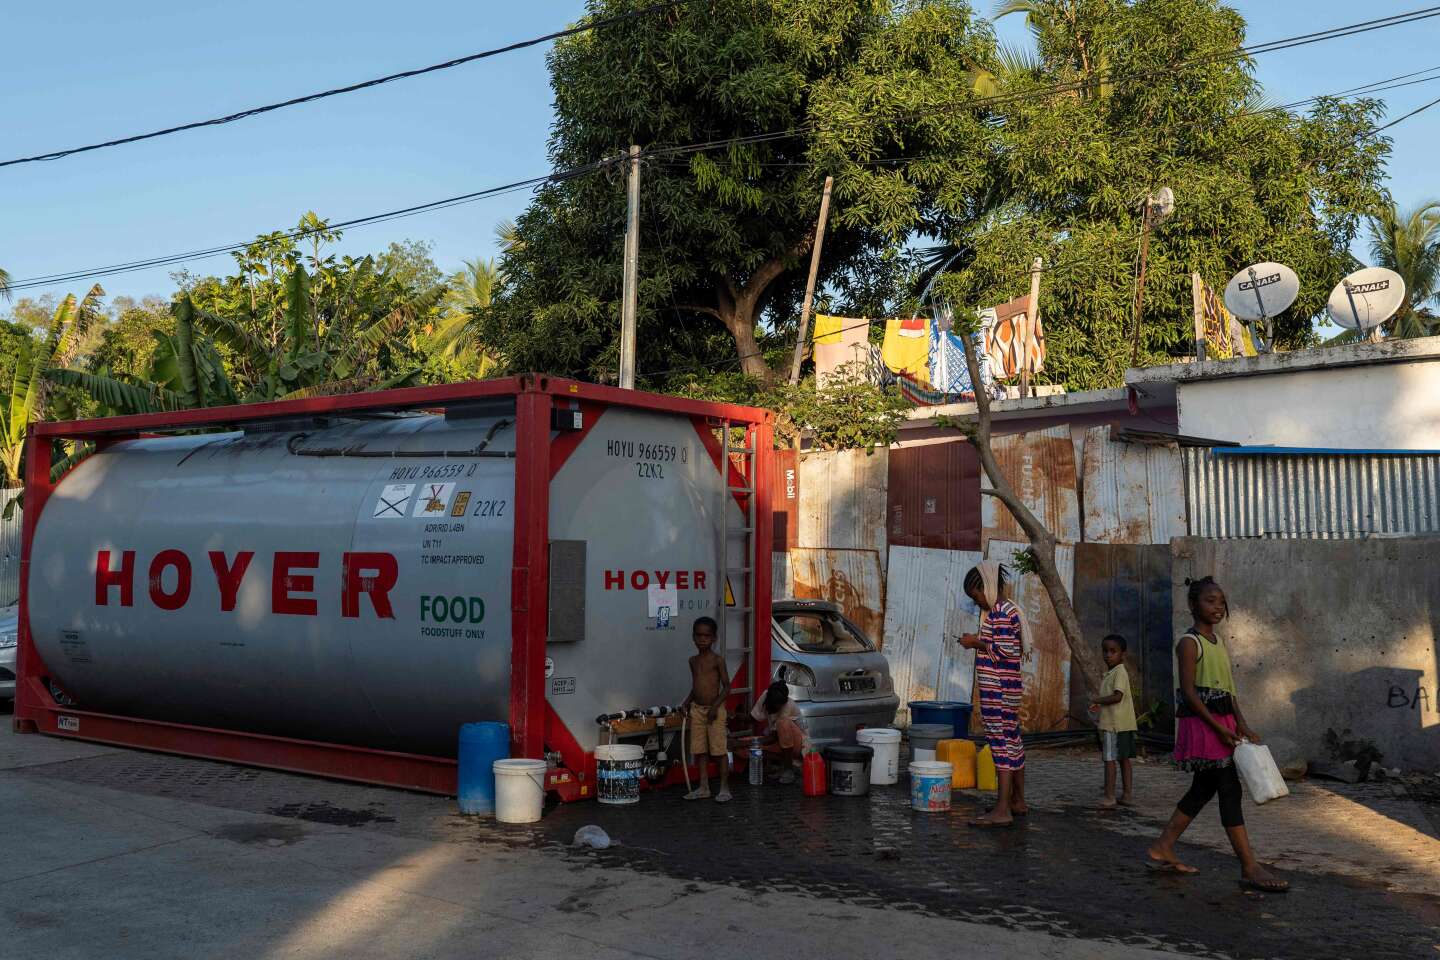 Crise de l’eau à Mayotte : première victoire judiciaire pour des plaignants